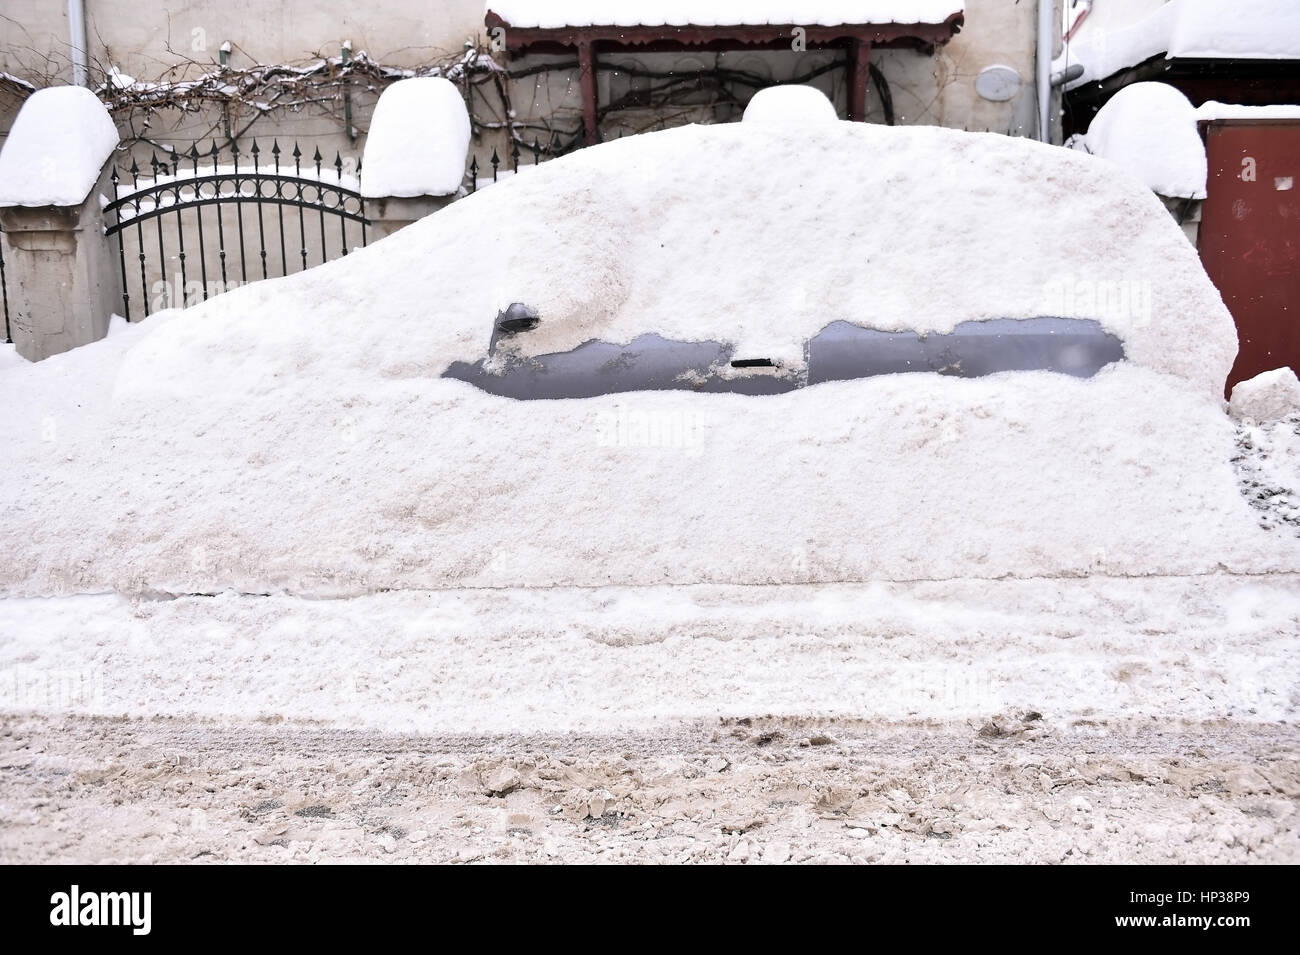 Voll Schnee bedeckten Wagen nach einem Schneefall in der Stadt gesehen Stockfoto